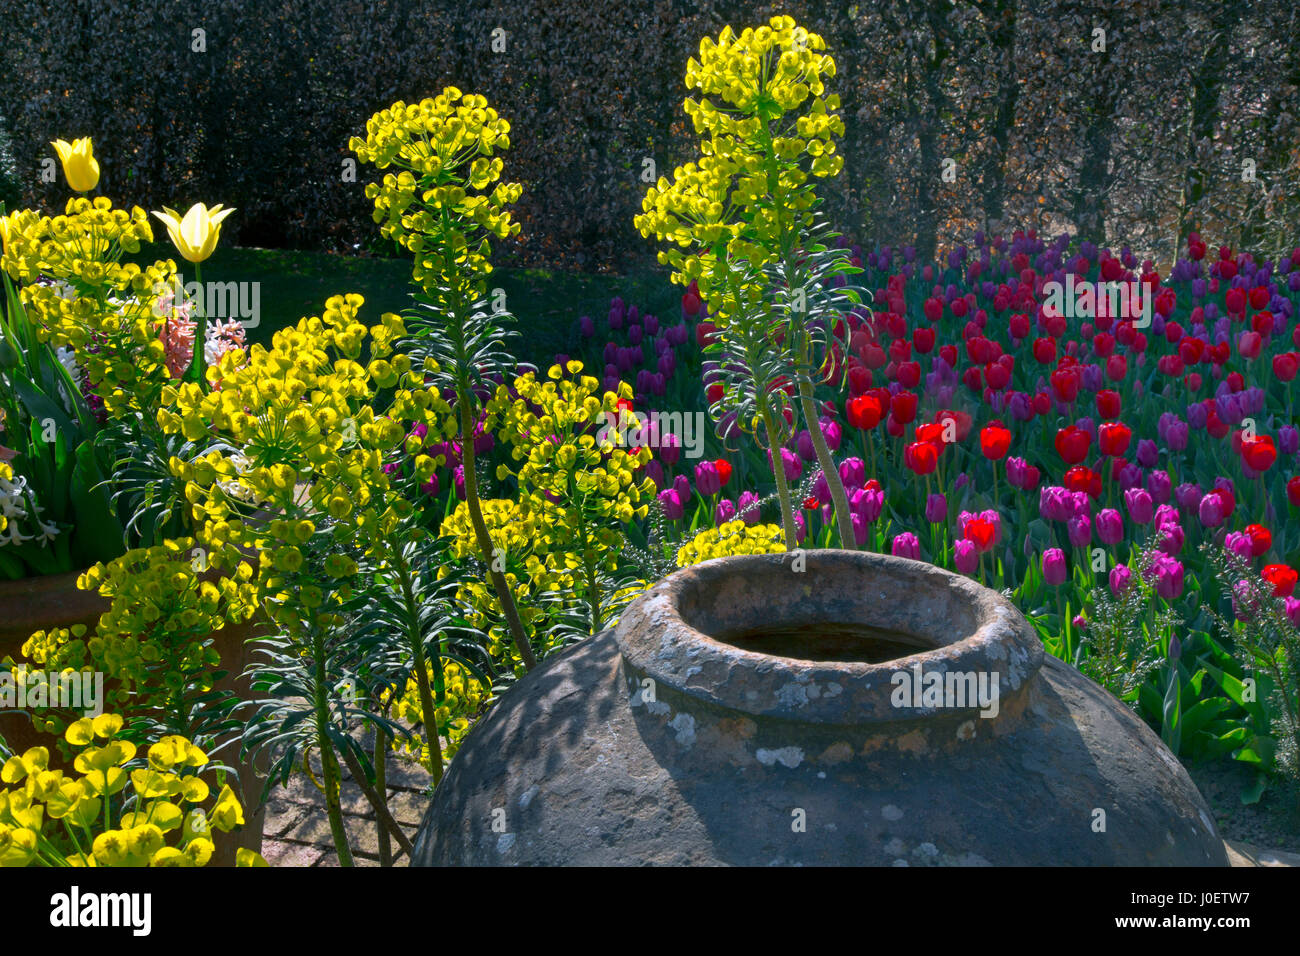 Euphorbia characias subsp. wulfenii spurge dans jardin avec pot Banque D'Images